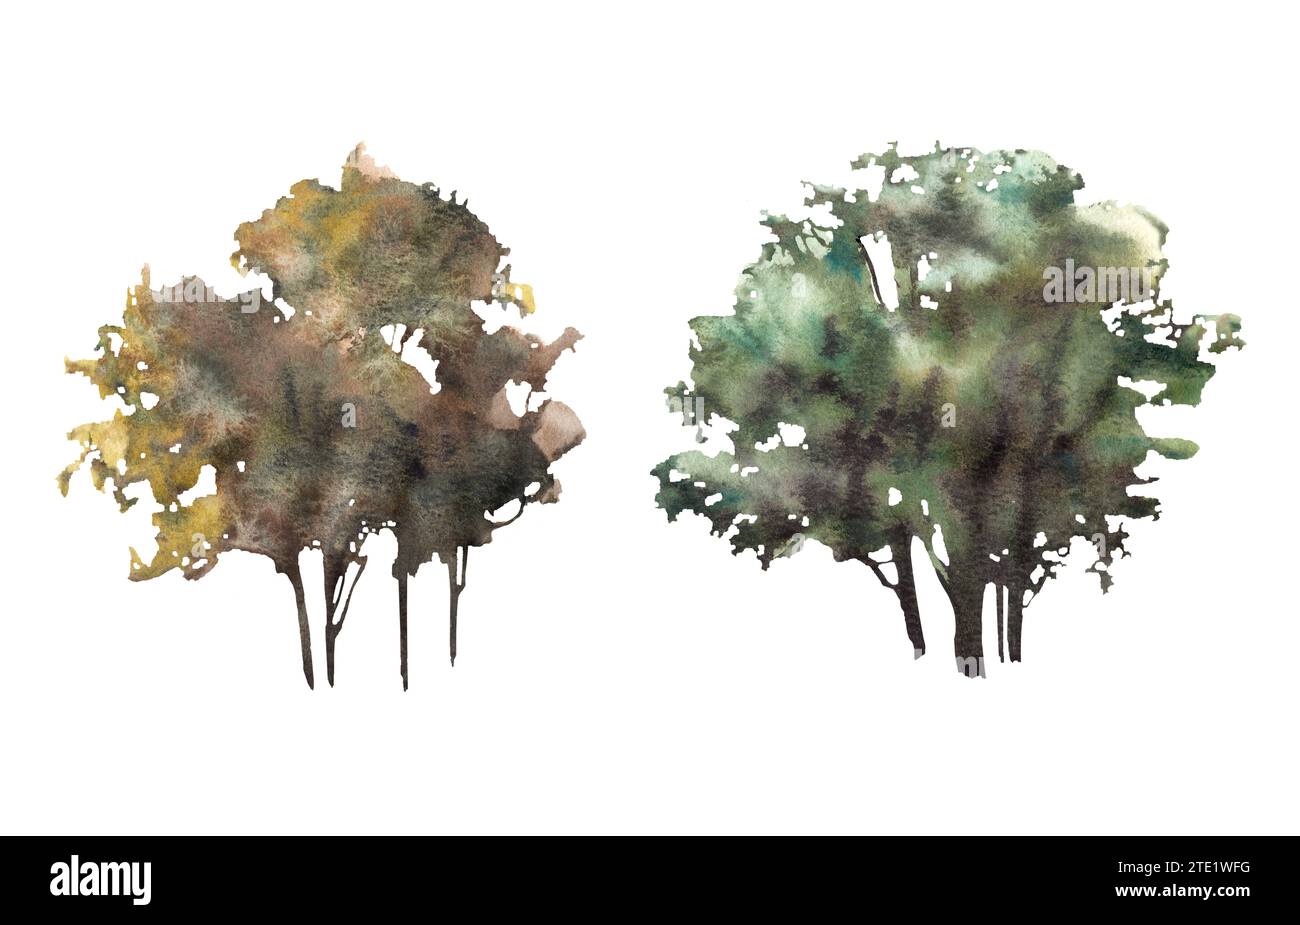 Laubbäume oder Büsche Aquarell handgemalt Illustration Clipart. Verschiedene Wald-, Park-, Feldpflanzenelemente für Ihre Karte, Landschaftsvorlage Stockfoto